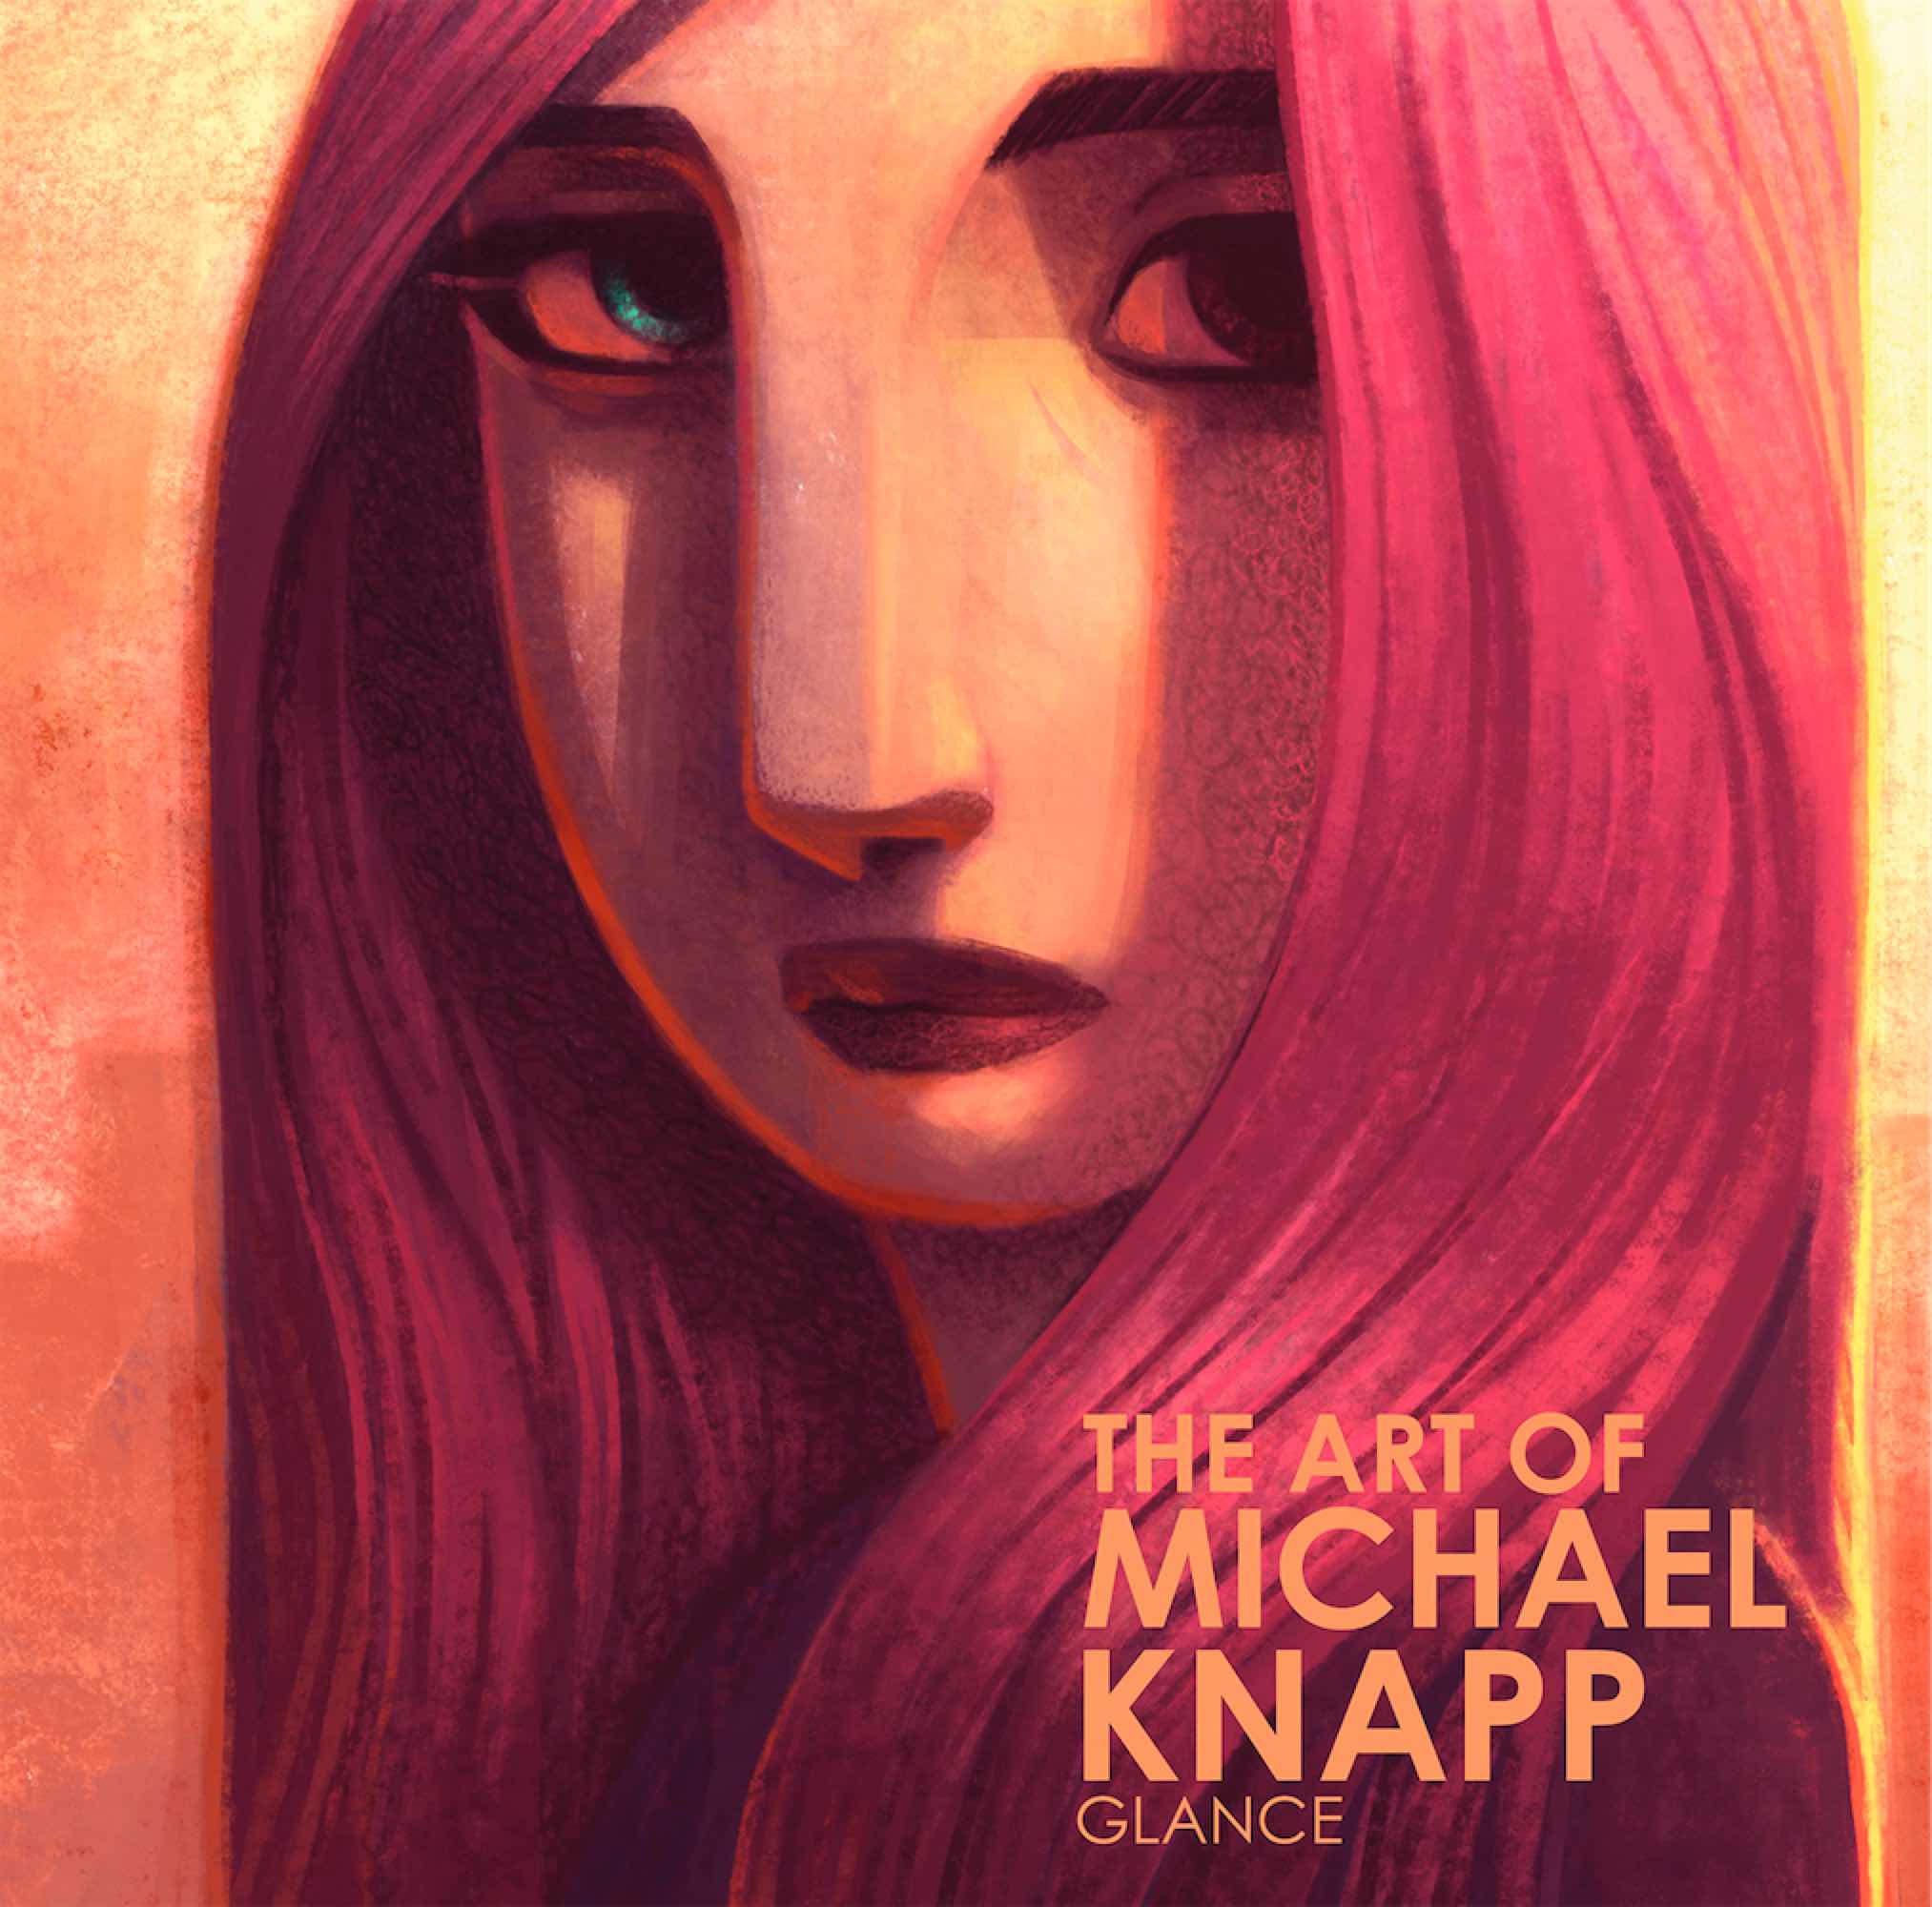 THE ART OF MICHAEL KNAPP, GLANCE